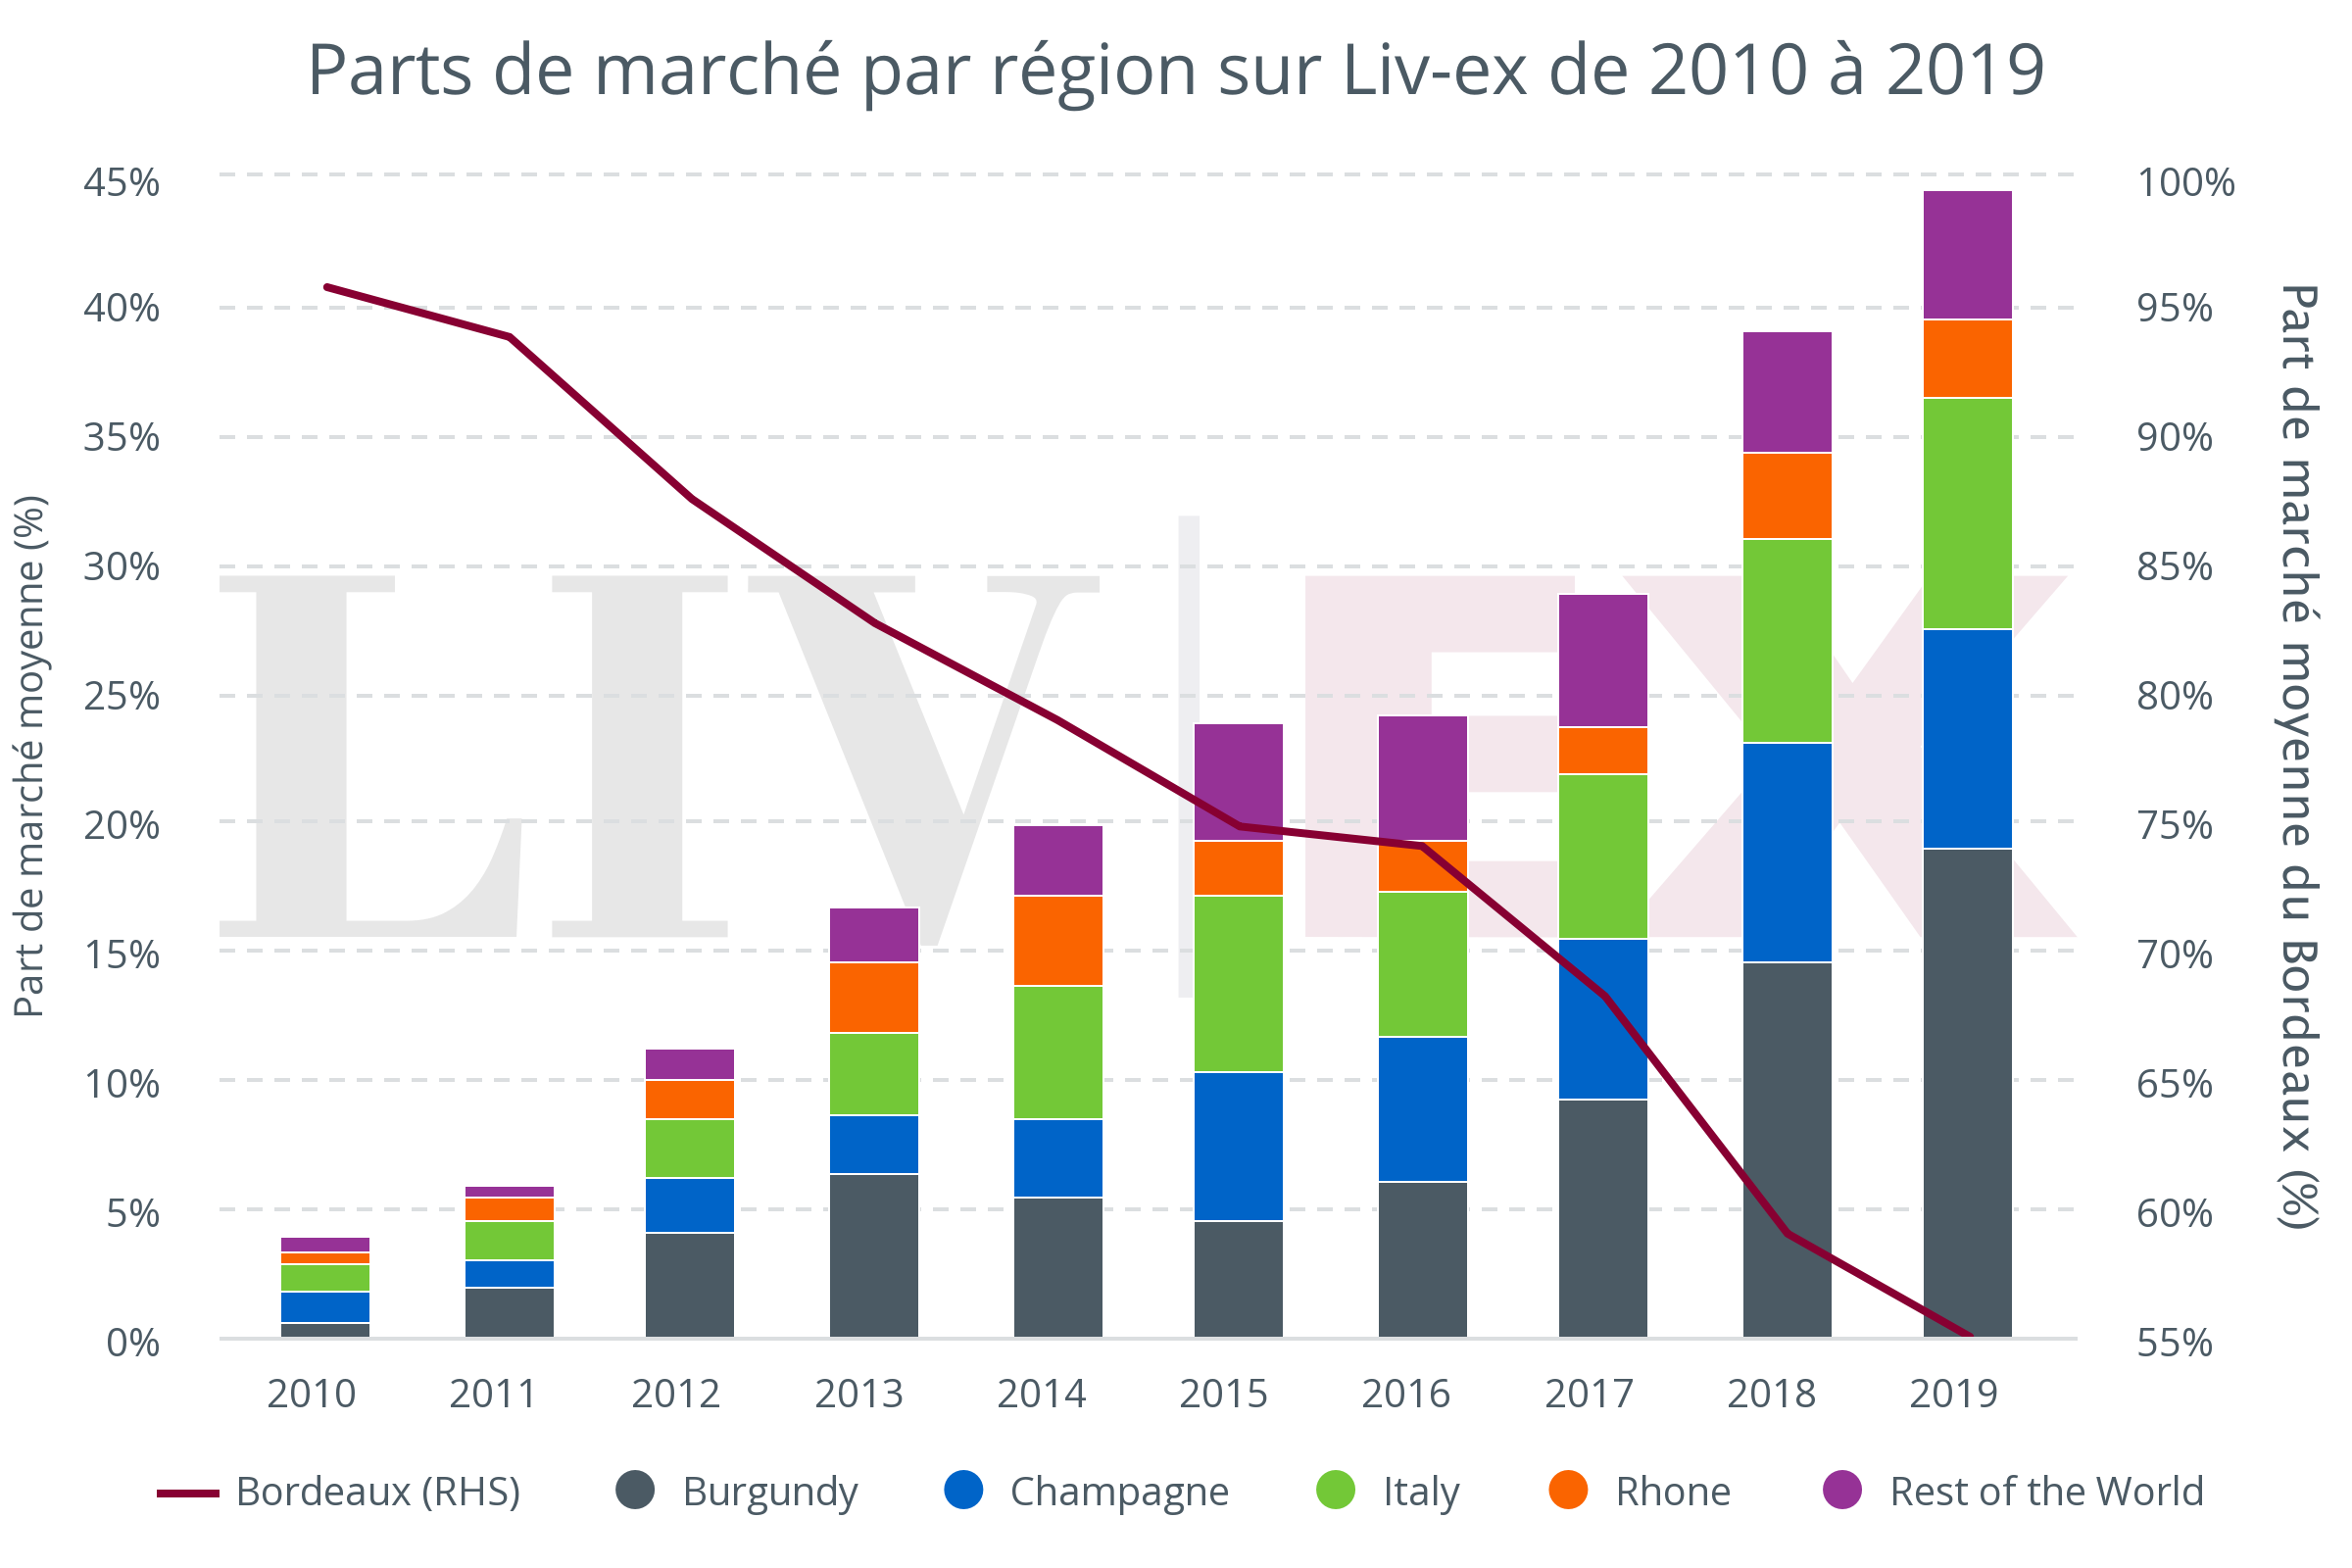 Parts de marché par région sur Liv-ex de 2010 à 2019